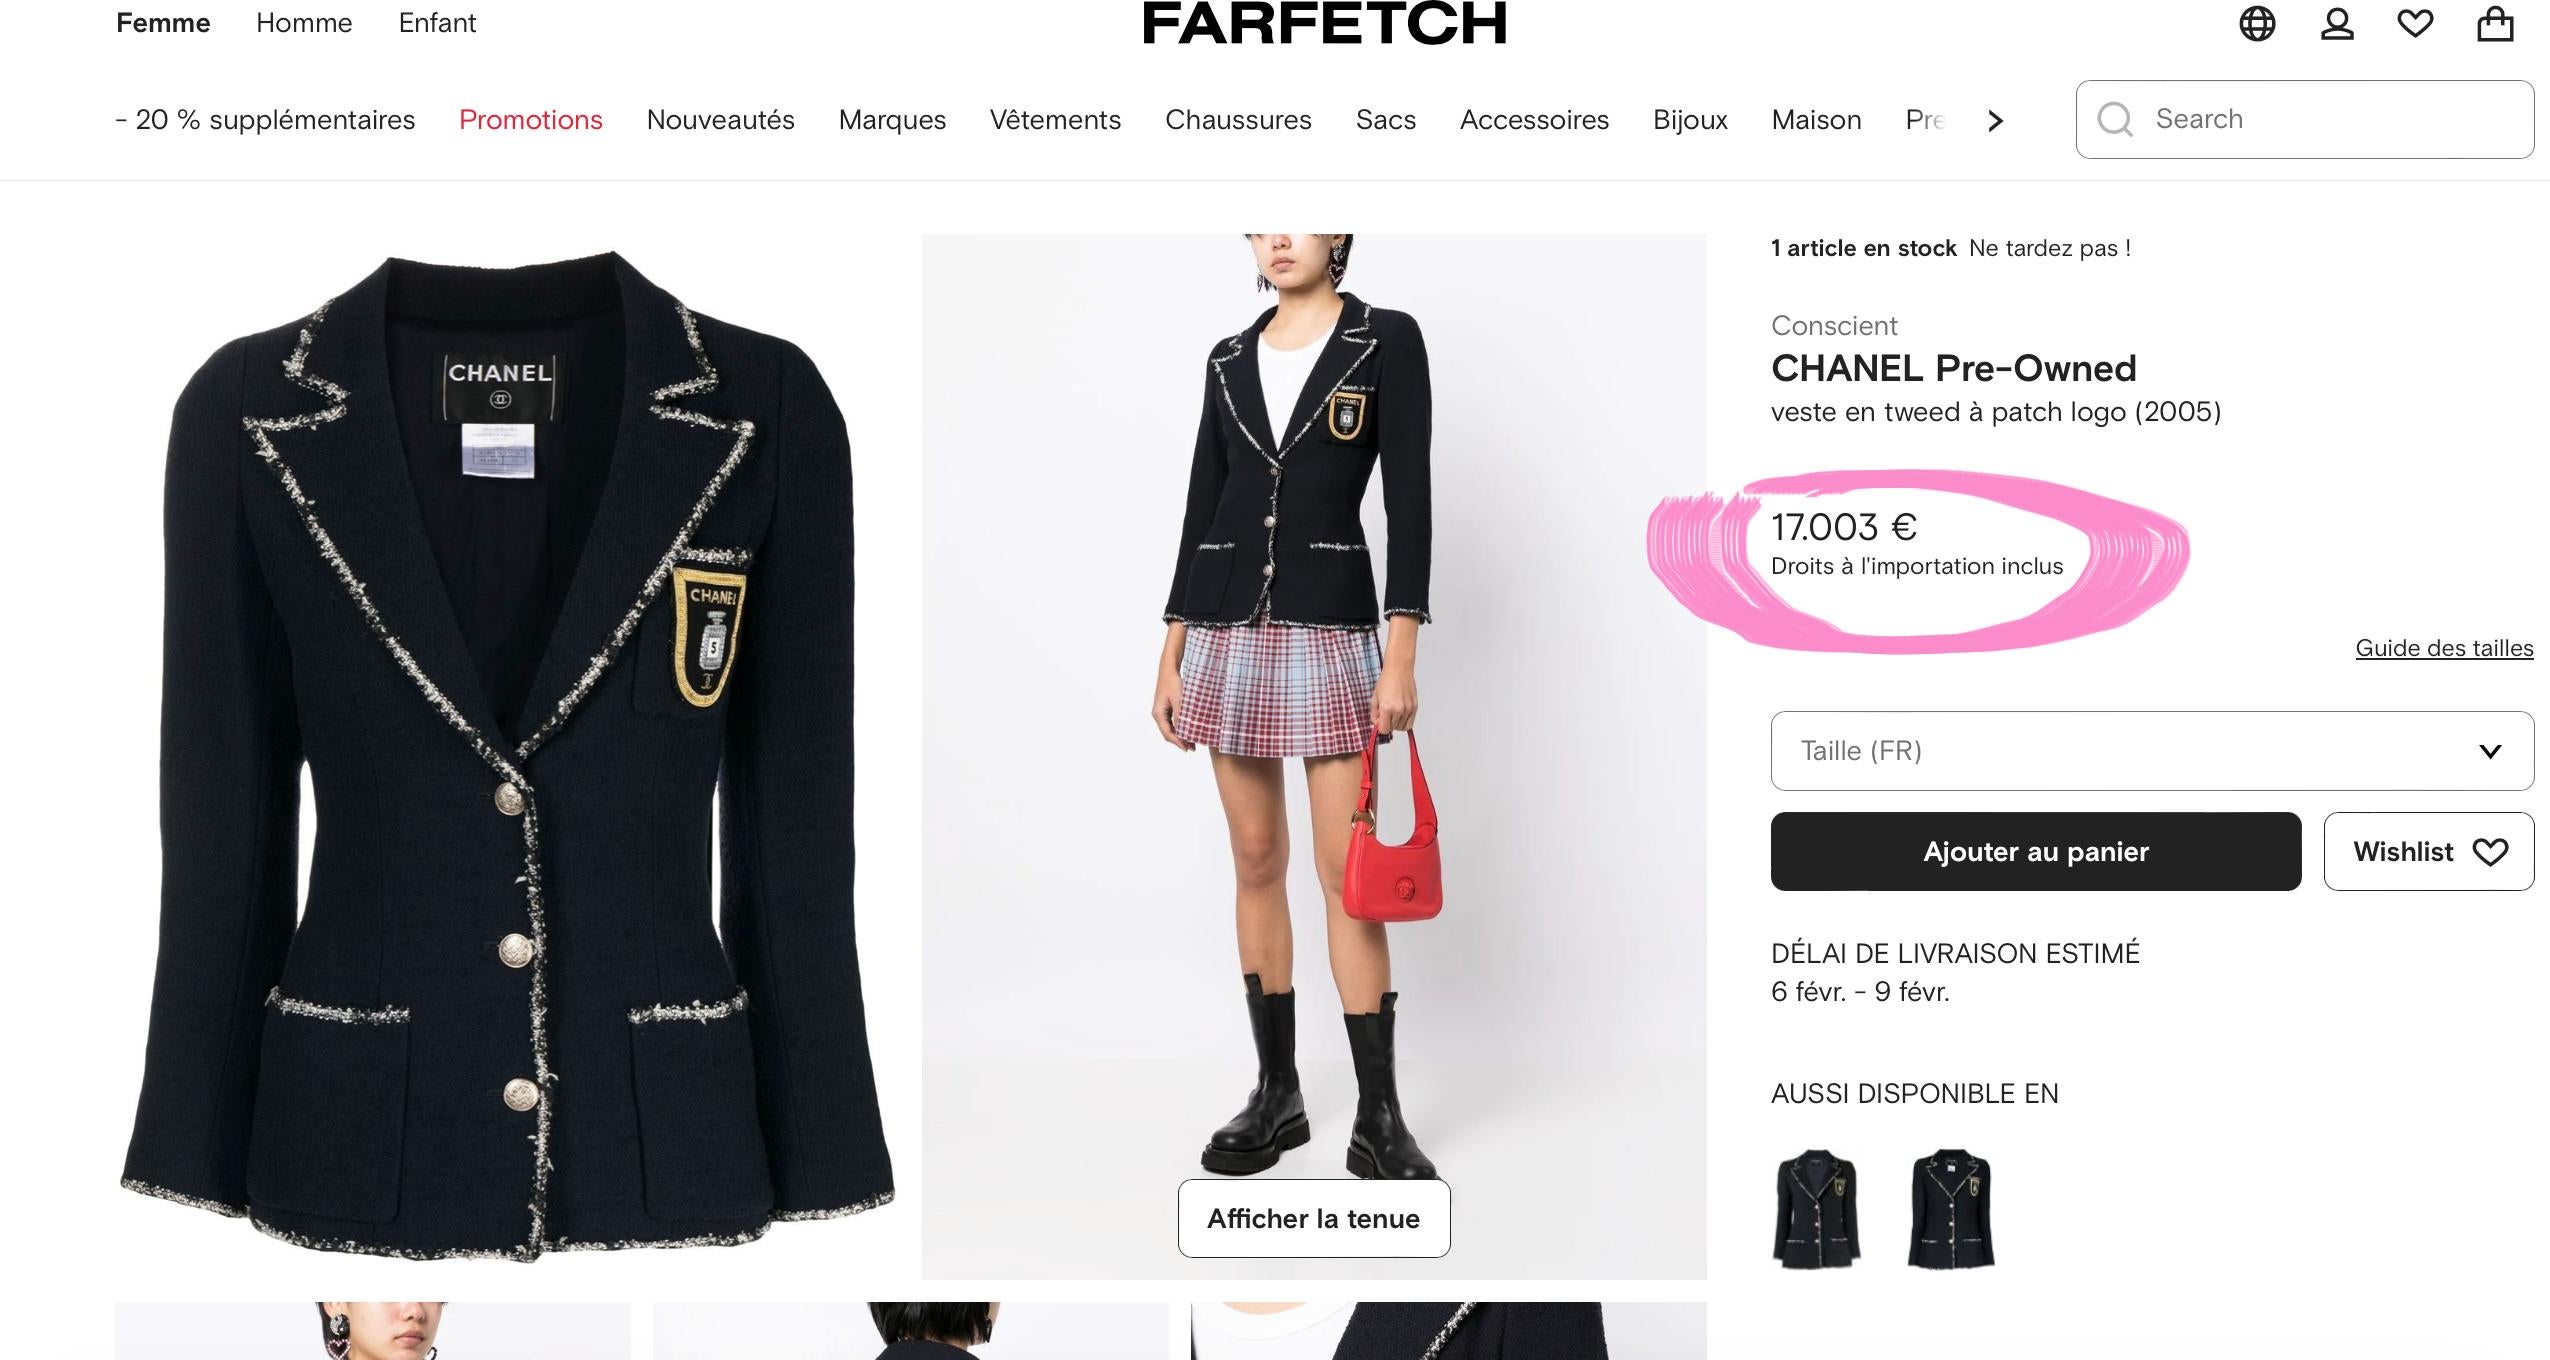 Die begehrteste schwarze Tweedjacke von Chanel mit CC-Logo-Aufnäher - wie im Film Devil Wears Prada zu sehen!
- Preis auf farfetch über 17.000€ für einen gebrauchten Artikel
- aus der 2005 Cruise Collection, 05C
- Silberfarbene Knöpfe mit CC-Logo an